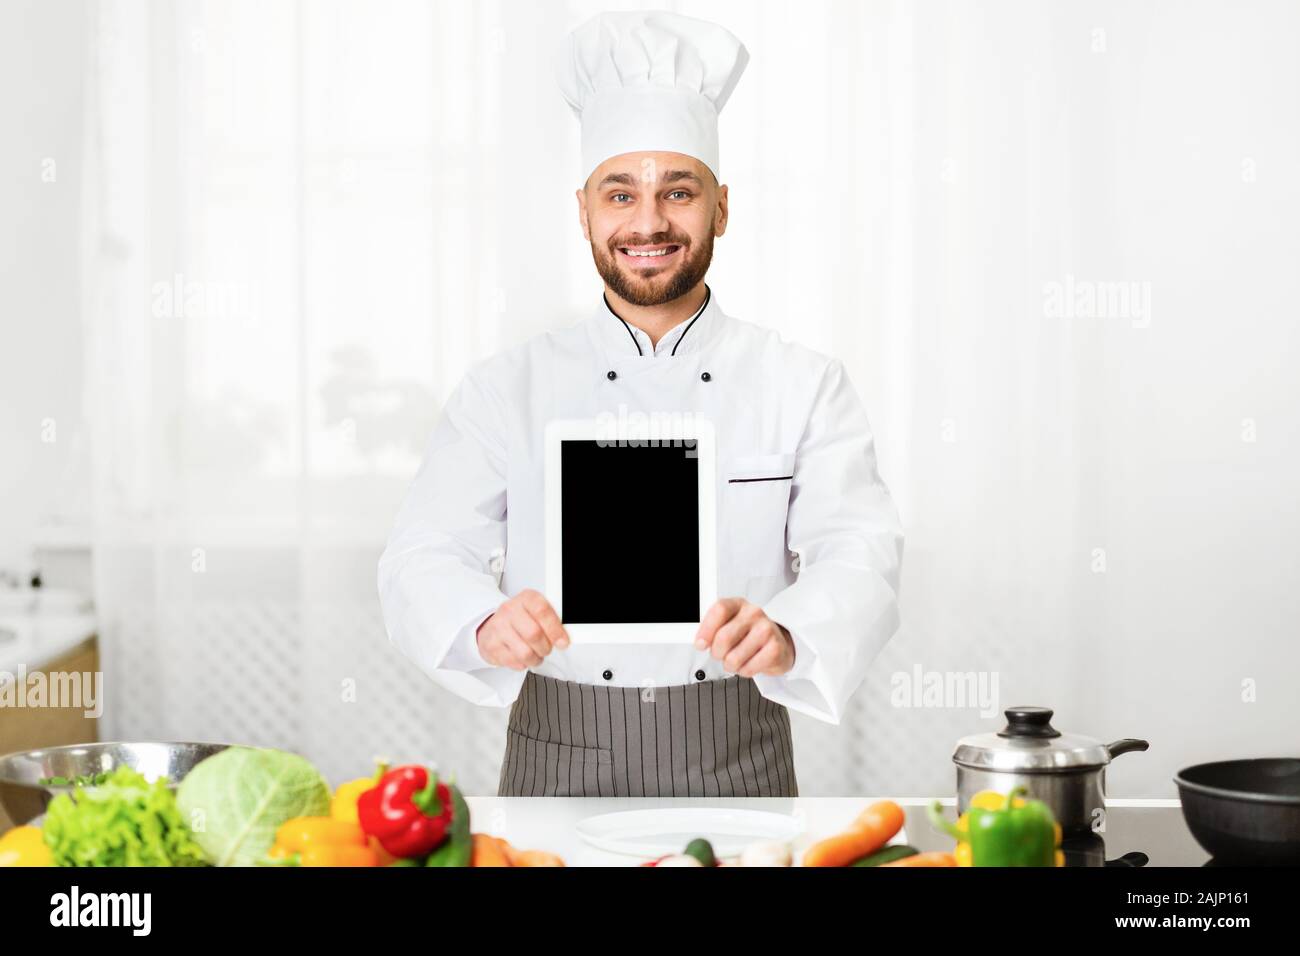 Cocinar App. Chef hombre mostrando tableta digital con pantalla vacía o Restaurante Menú publicidad permanente de aplicación en interior de la cocina. Boceto Foto de stock